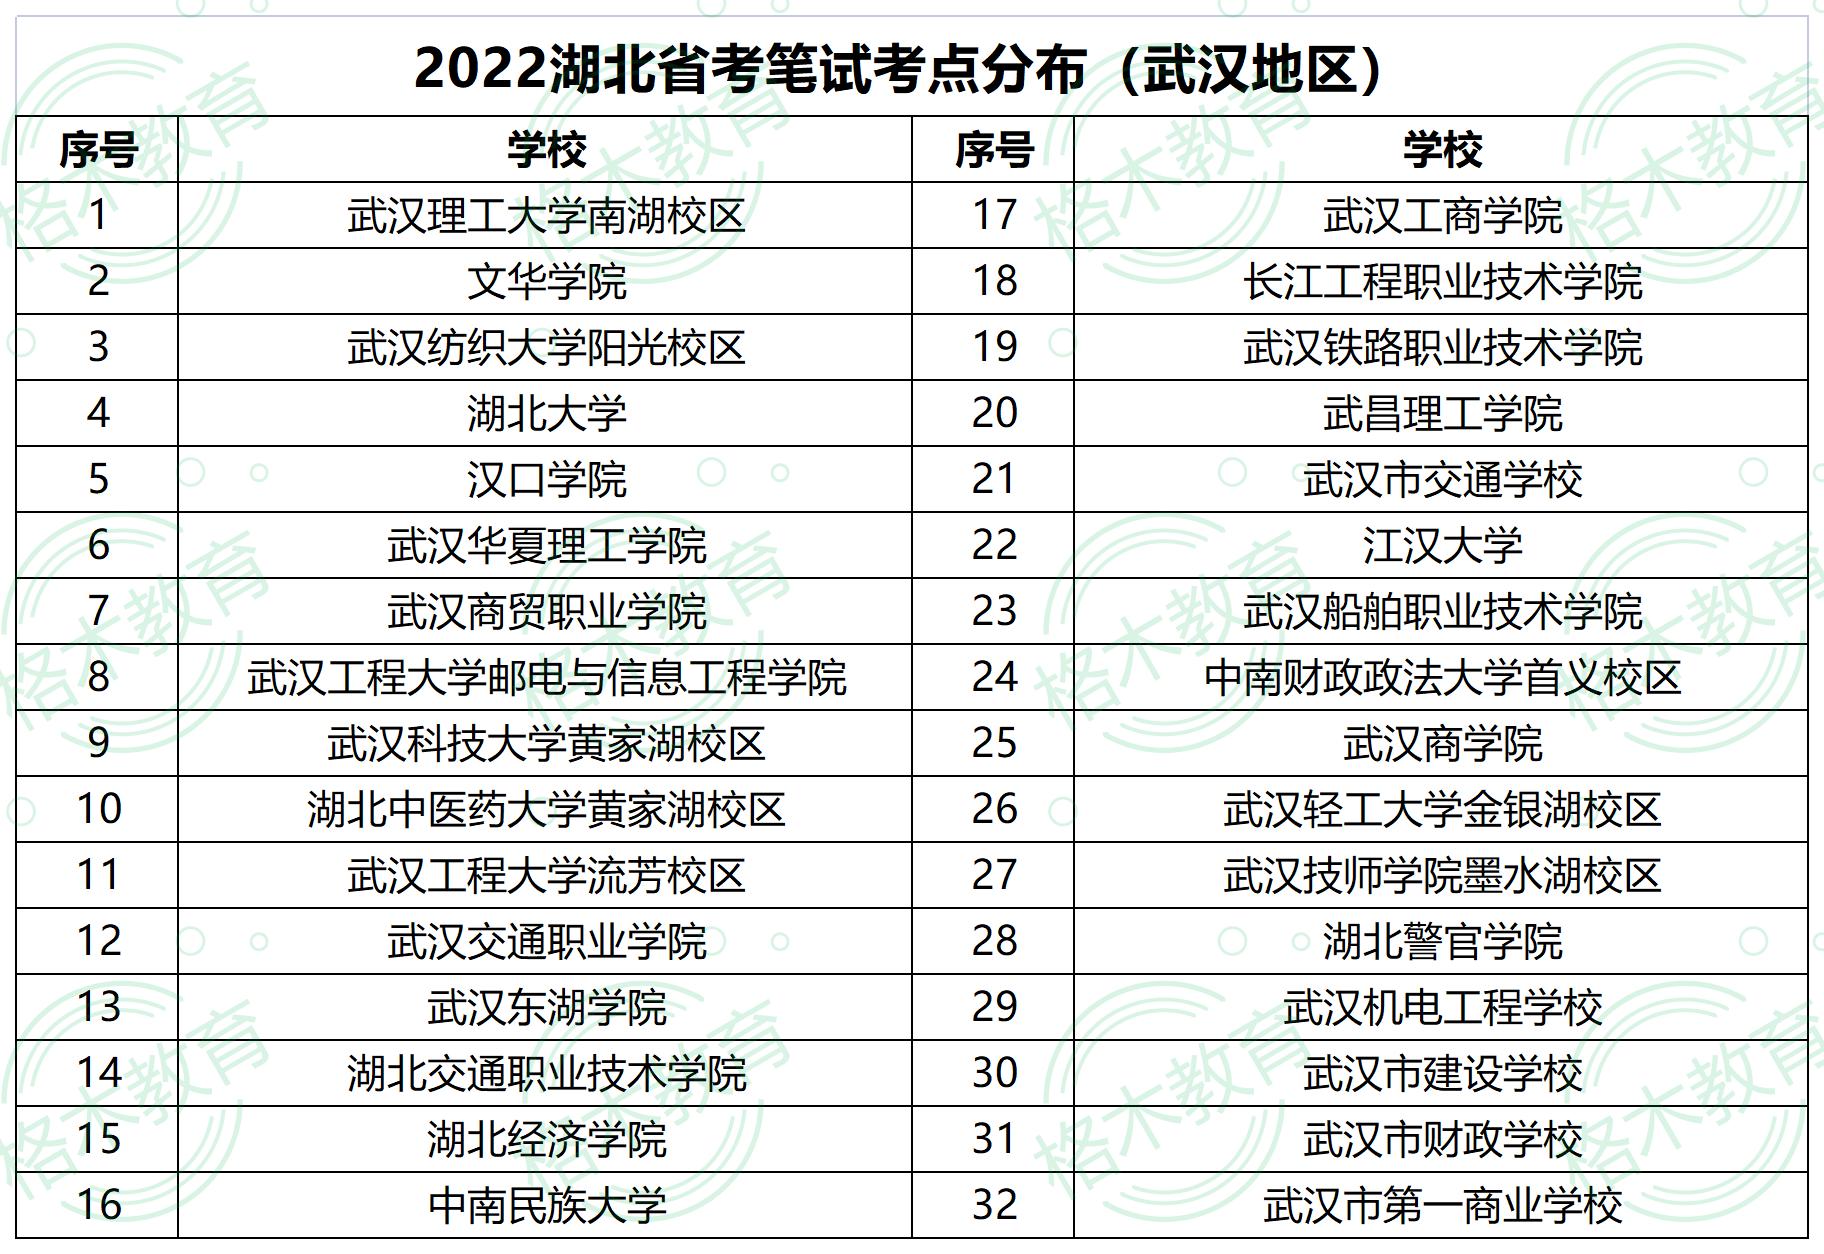 2022年湖北省武汉公务员考试考场分布图—武汉铁路职业技术学院